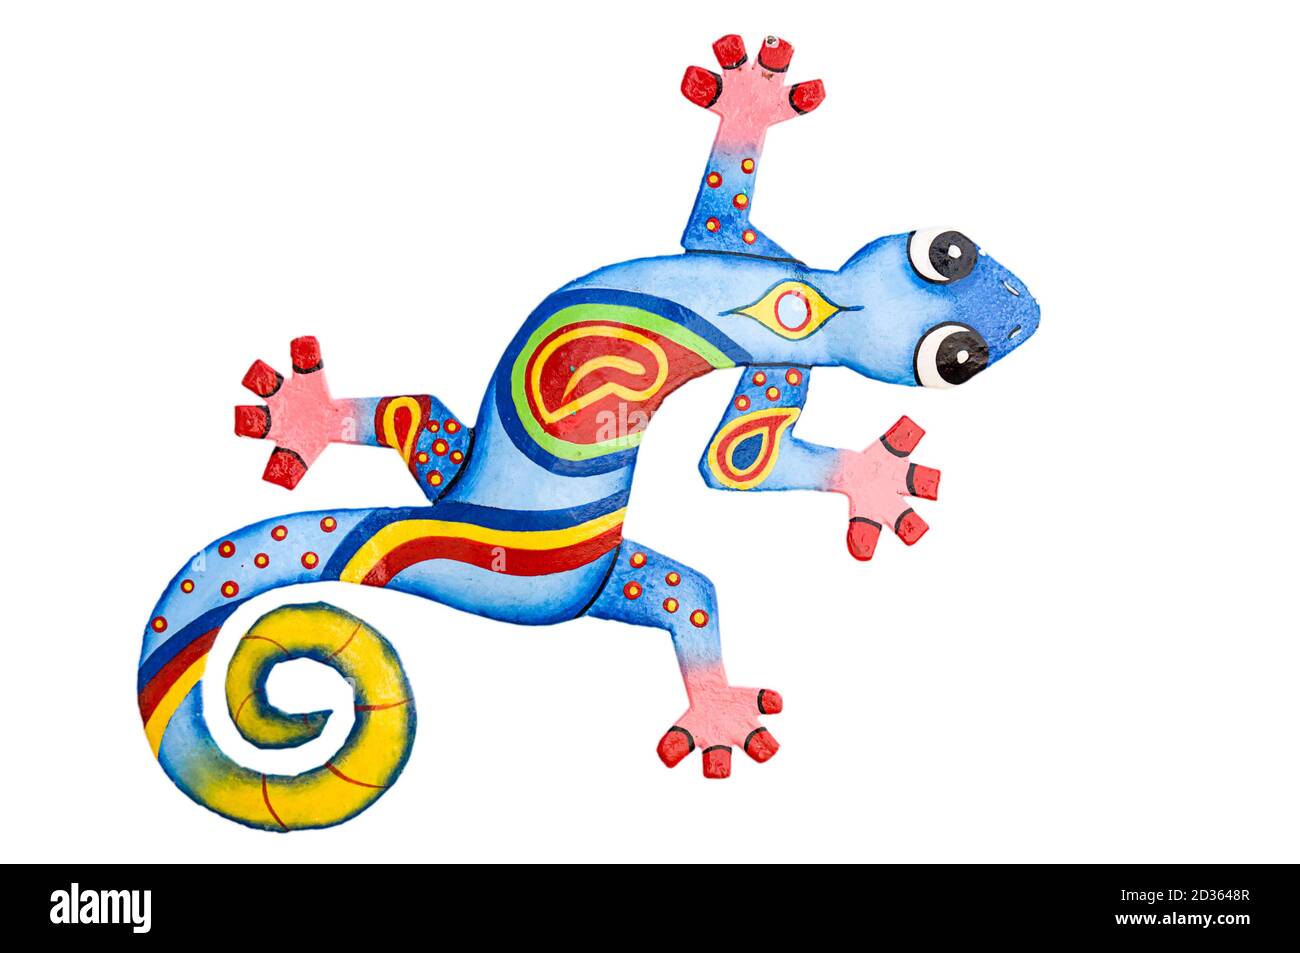 Magnifique dessin d'une salamandre colorée sur fond blanc Banque D'Images